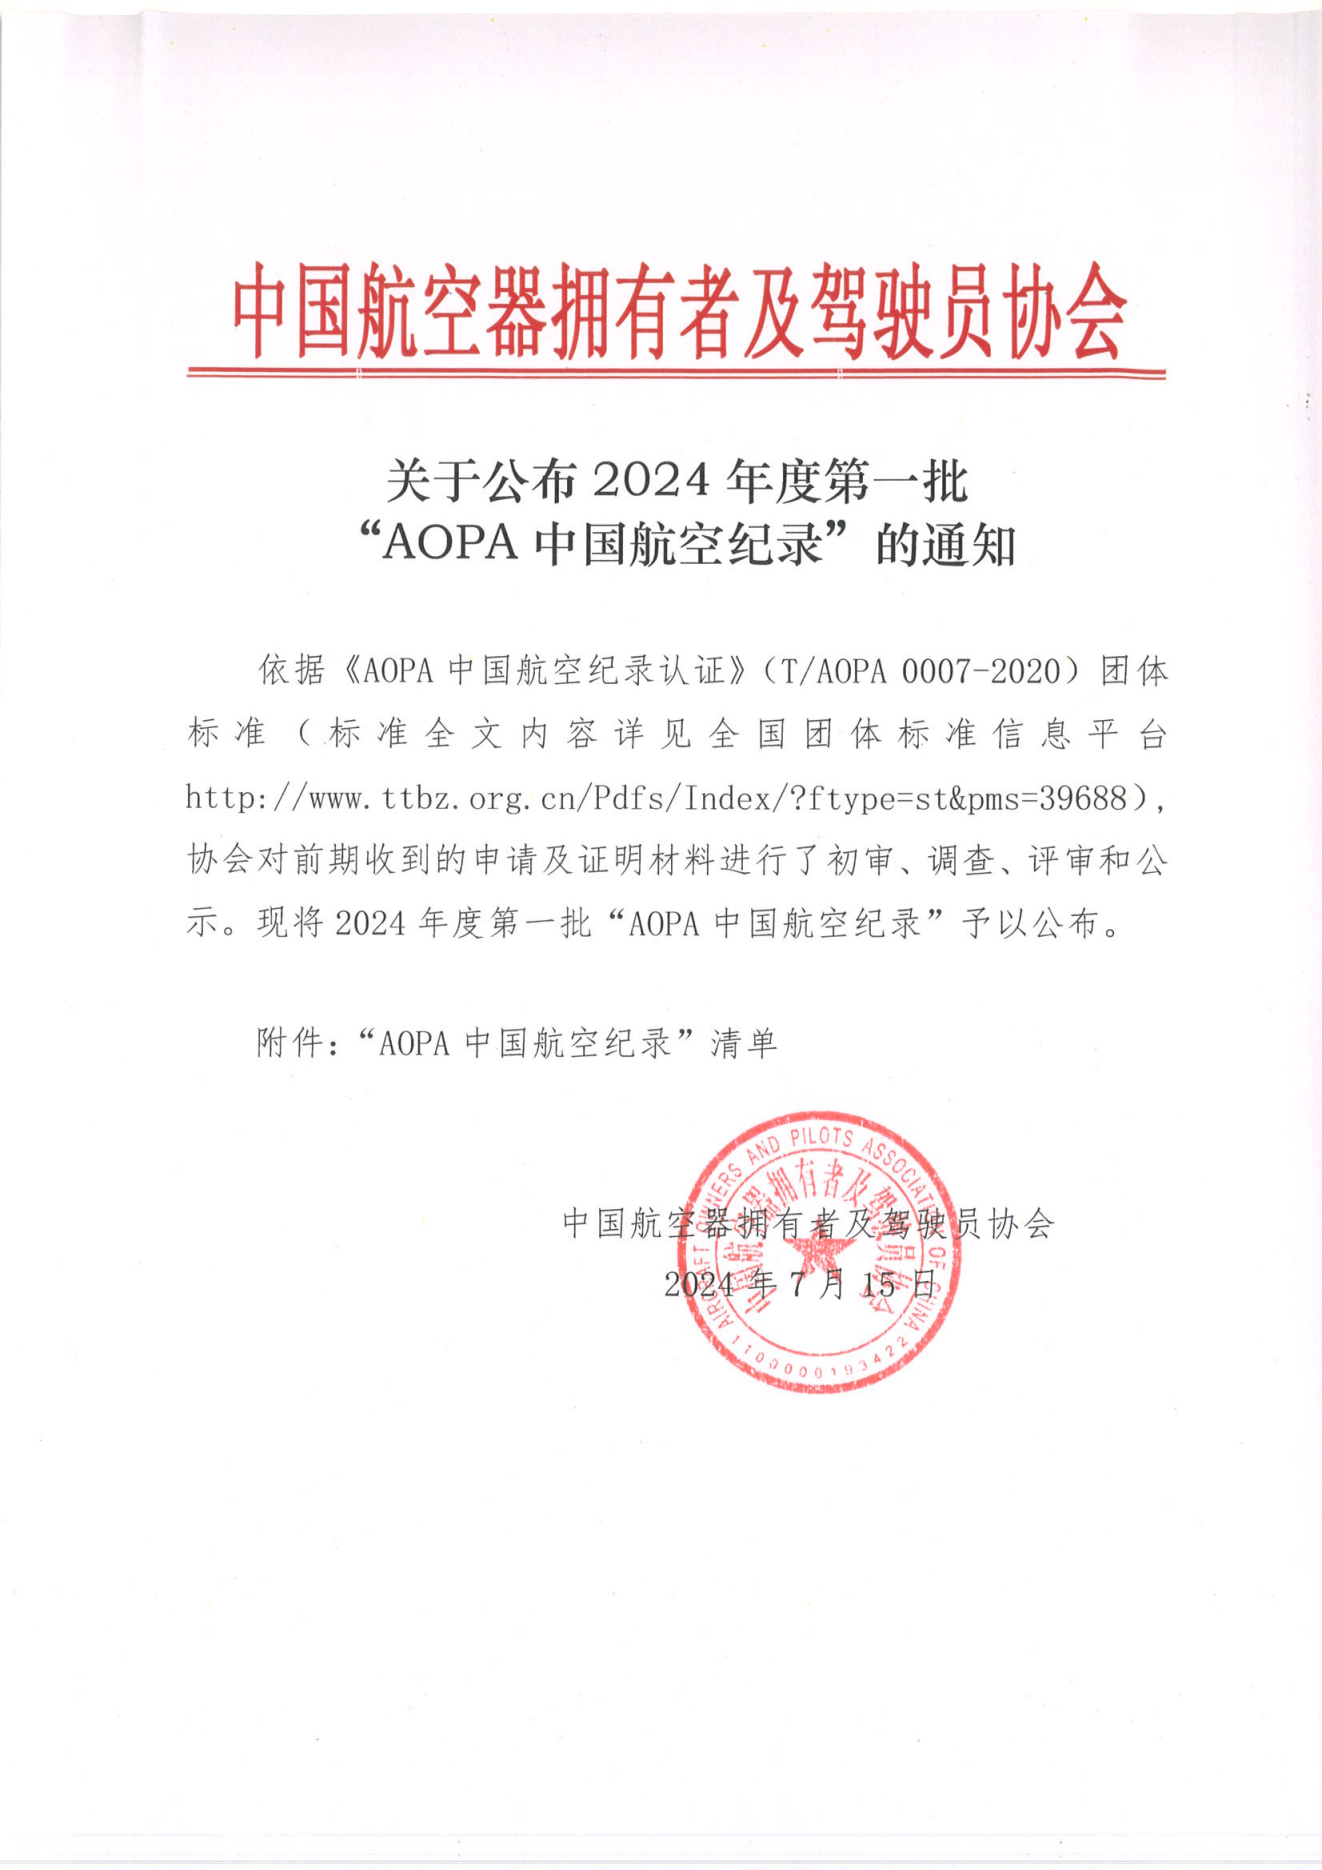 关于公布2024年度第一批“AOPA中国航空纪录”的通知_00.png